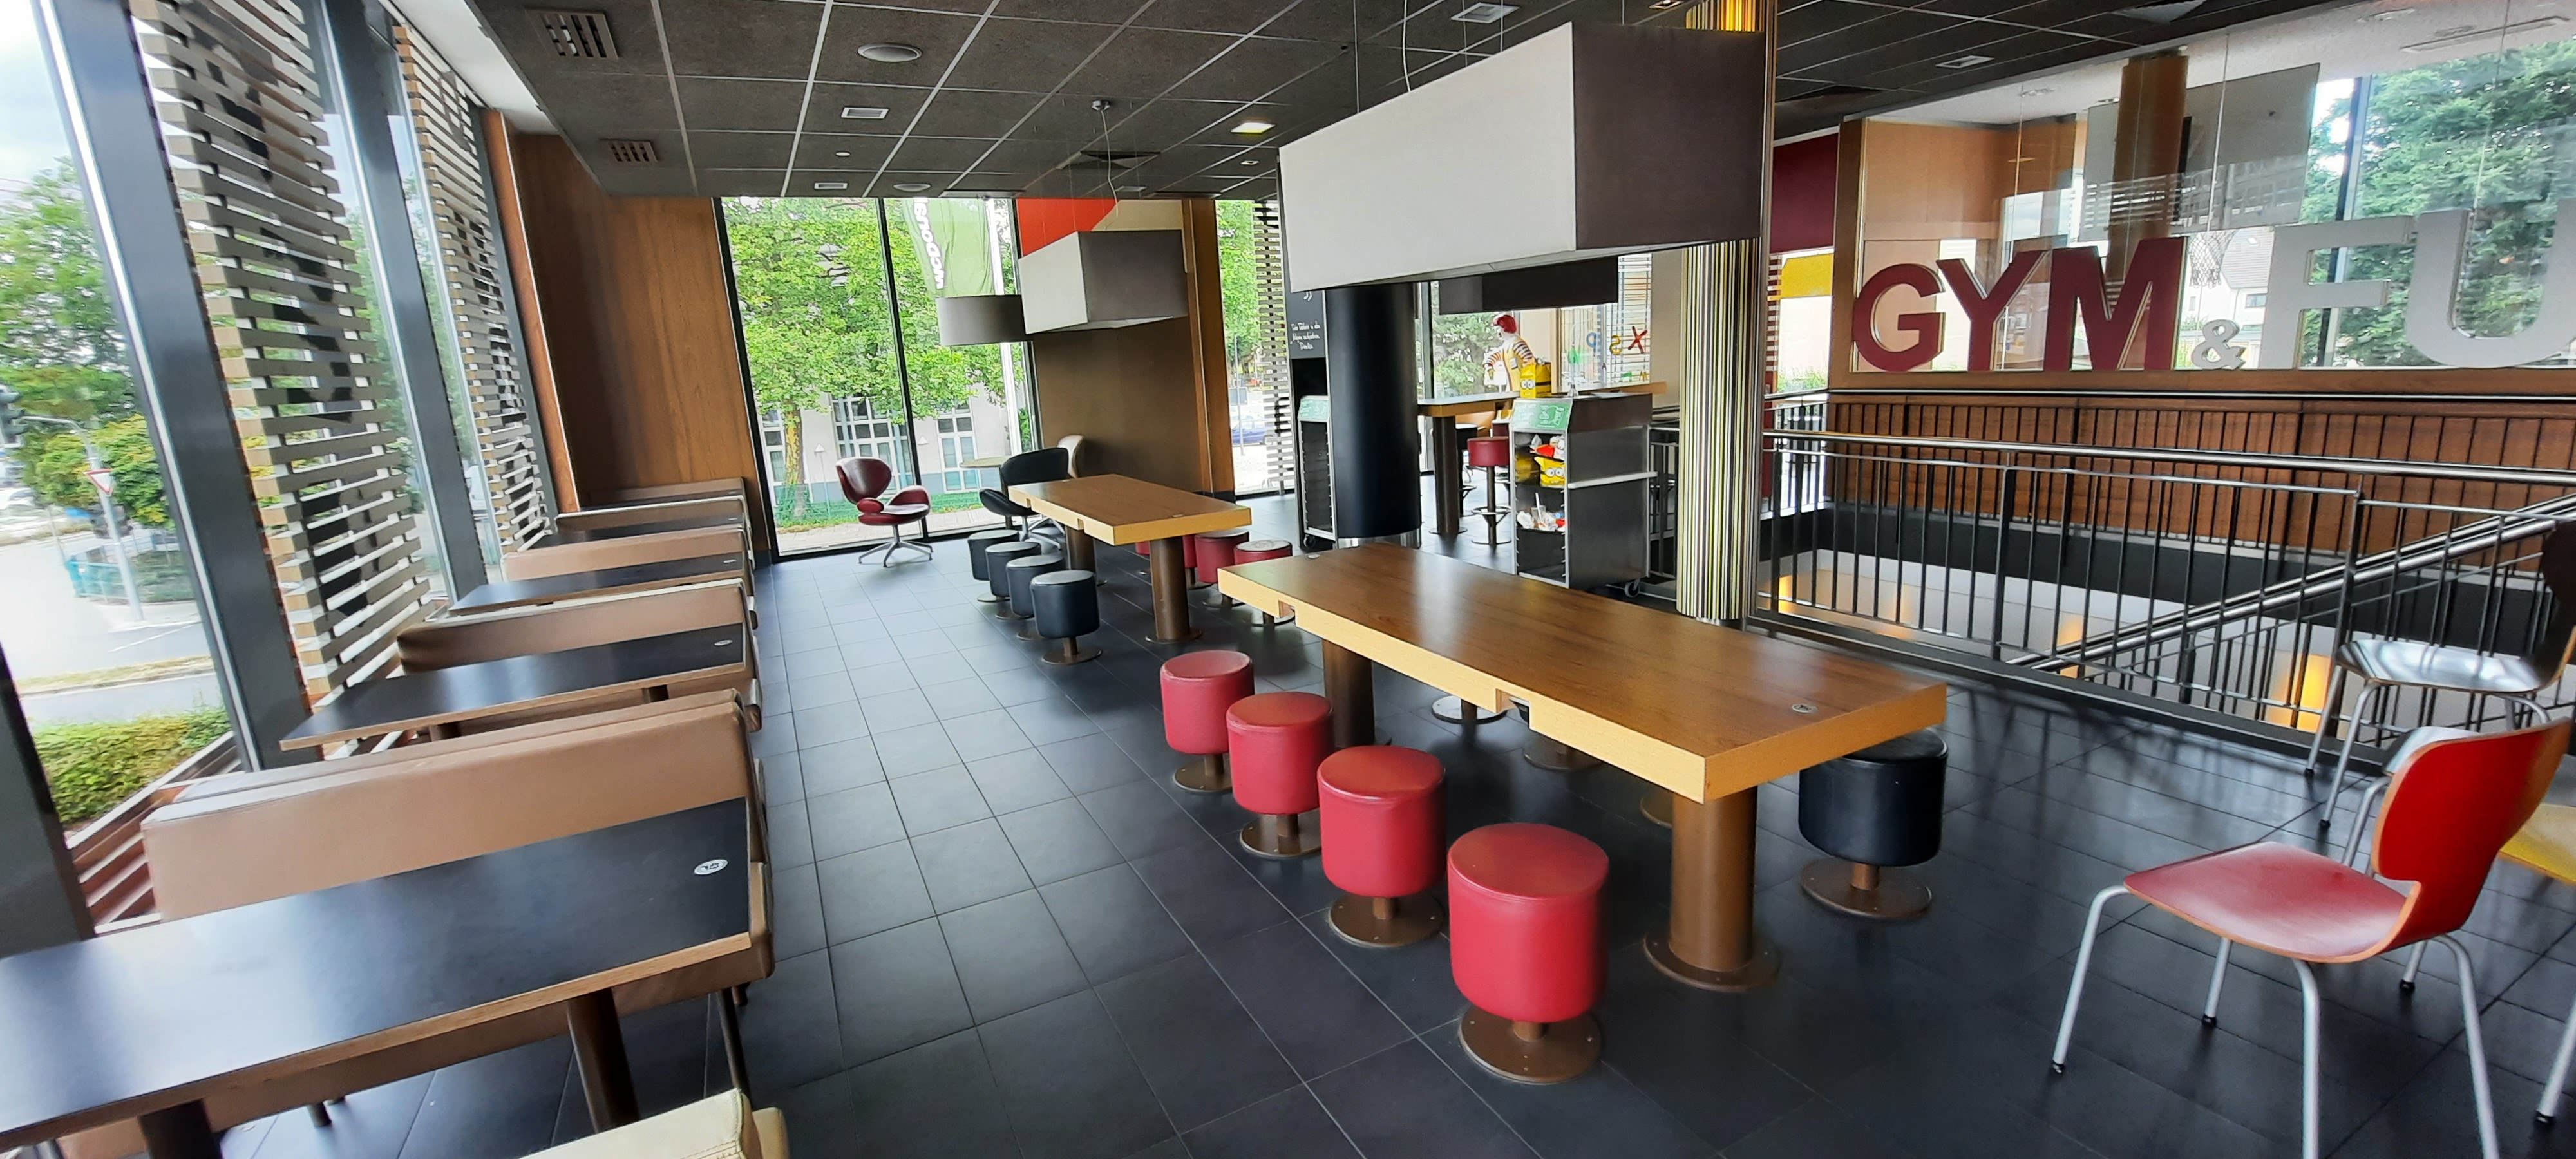 Bild 2 McDonald's in Bochum